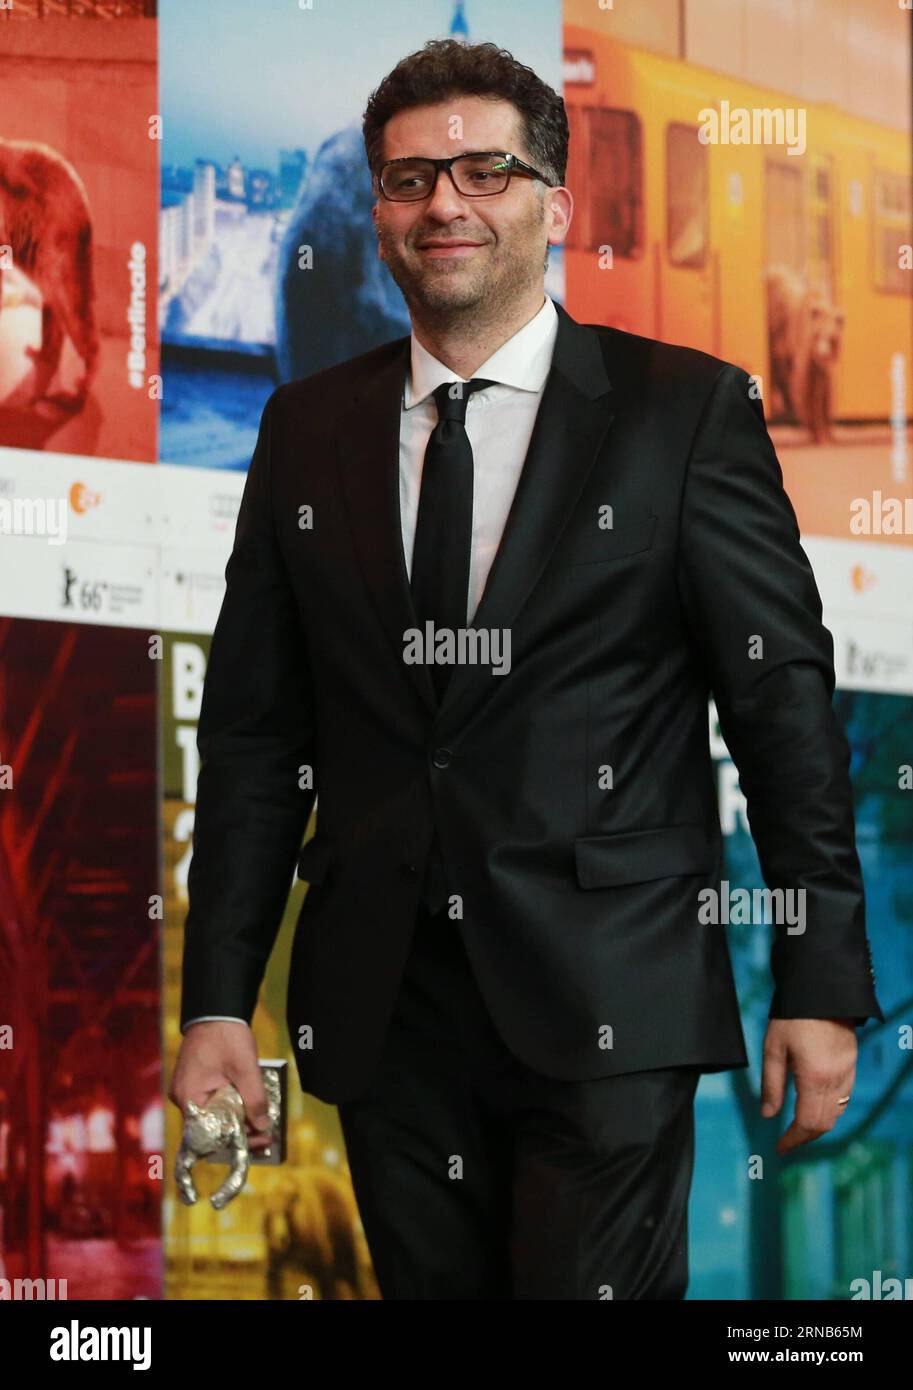 Il regista bosniaco Danis Tanovic che tiene l' Orso d' argento per la grande giuria per il film morte a Sarajevo partecipa a una conferenza stampa dopo la cerimonia di premiazione del 66° Festival internazionale del cinema di Berlino, in Germania, 20 febbraio 2016. ) GERMANIA-BERLINO-BERLINALE INTERNATIONAL FILM FESTIVAL-CERIMONIA DI PREMIAZIONE LuoxHuanhuan PUBLICATIONxNOTxINxCHN il regista bosniaco Danis Tanovic tiene l'Orso d'Argento per la grande giuria per la morte del film a Sarajevo partecipa a una conferenza stampa dopo la cerimonia di premiazione del 66° Festival Internazionale del Cinema di Berlino Germania 20 febbraio 2016 Germania Berlino Berlino Berlino Ber Foto Stock